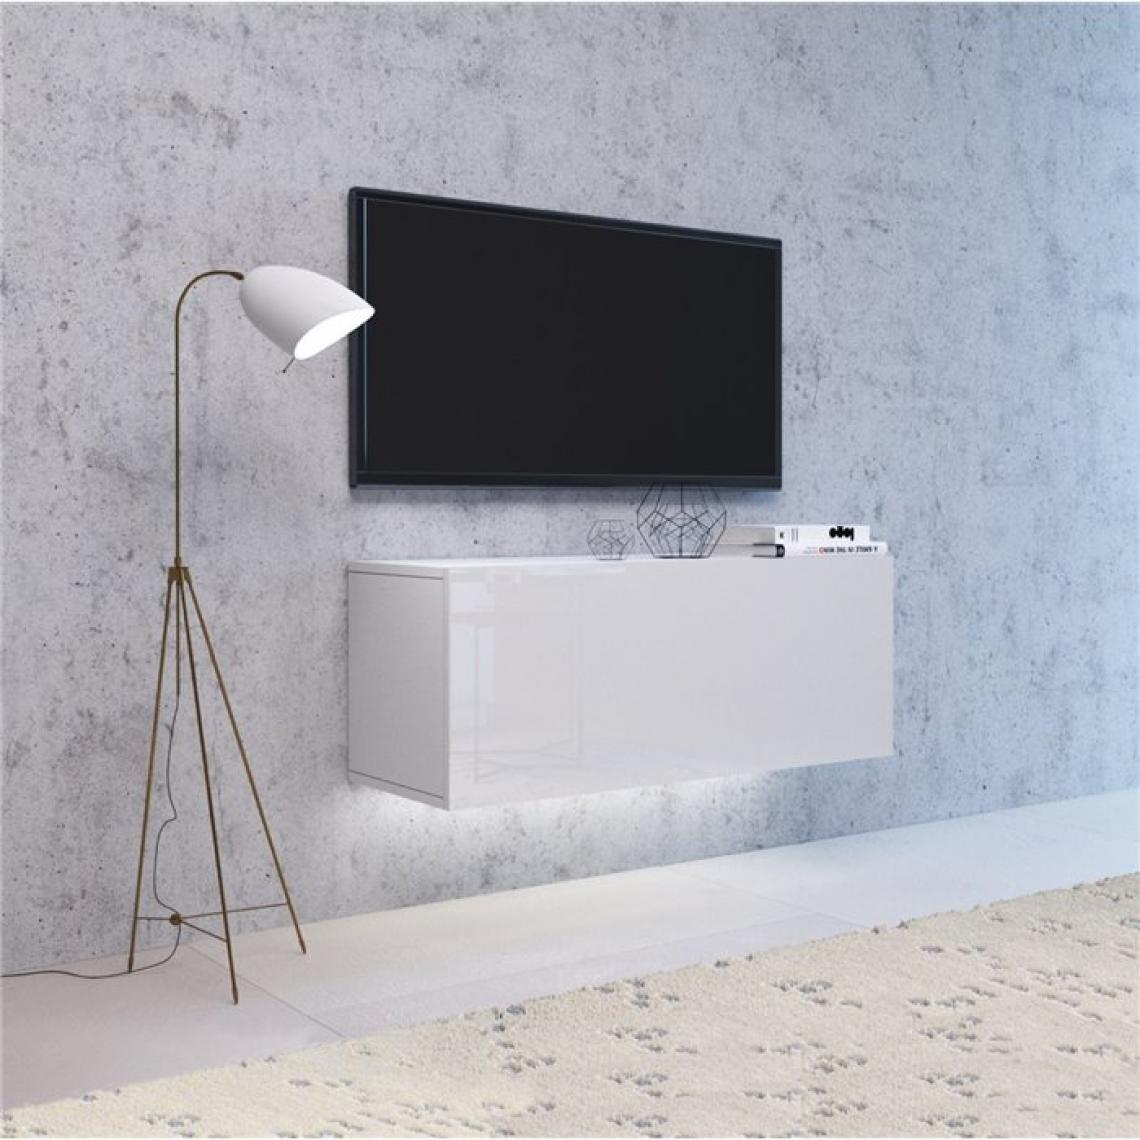 Hucoco - VIVIO - Meuble TV à suspendre style contemporain salon/séjour - 100x40x38 cm - Meuble télévision avec rangements - Gloss + Mat - Blanc - Meubles TV, Hi-Fi